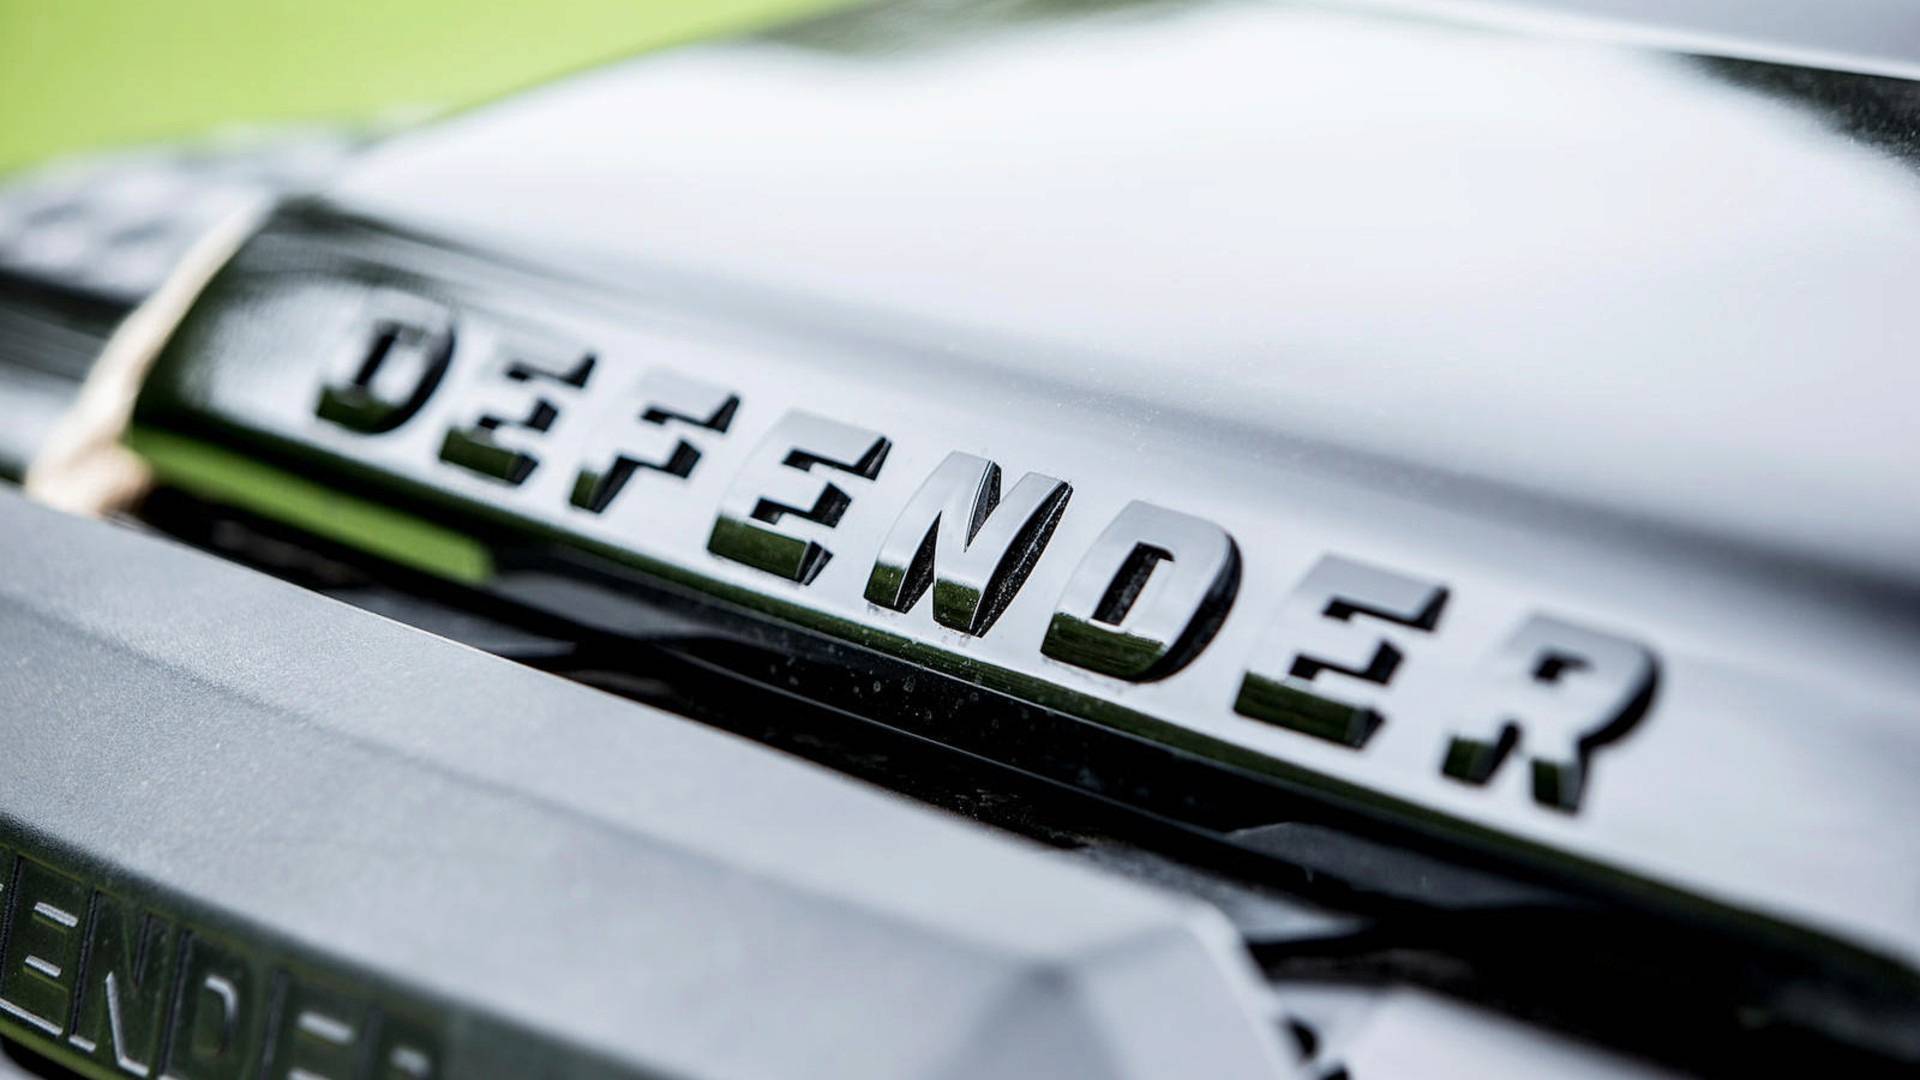 "بالصور" سيارة جيمس بوند معروضة للبيع في مزاد عالمي 24